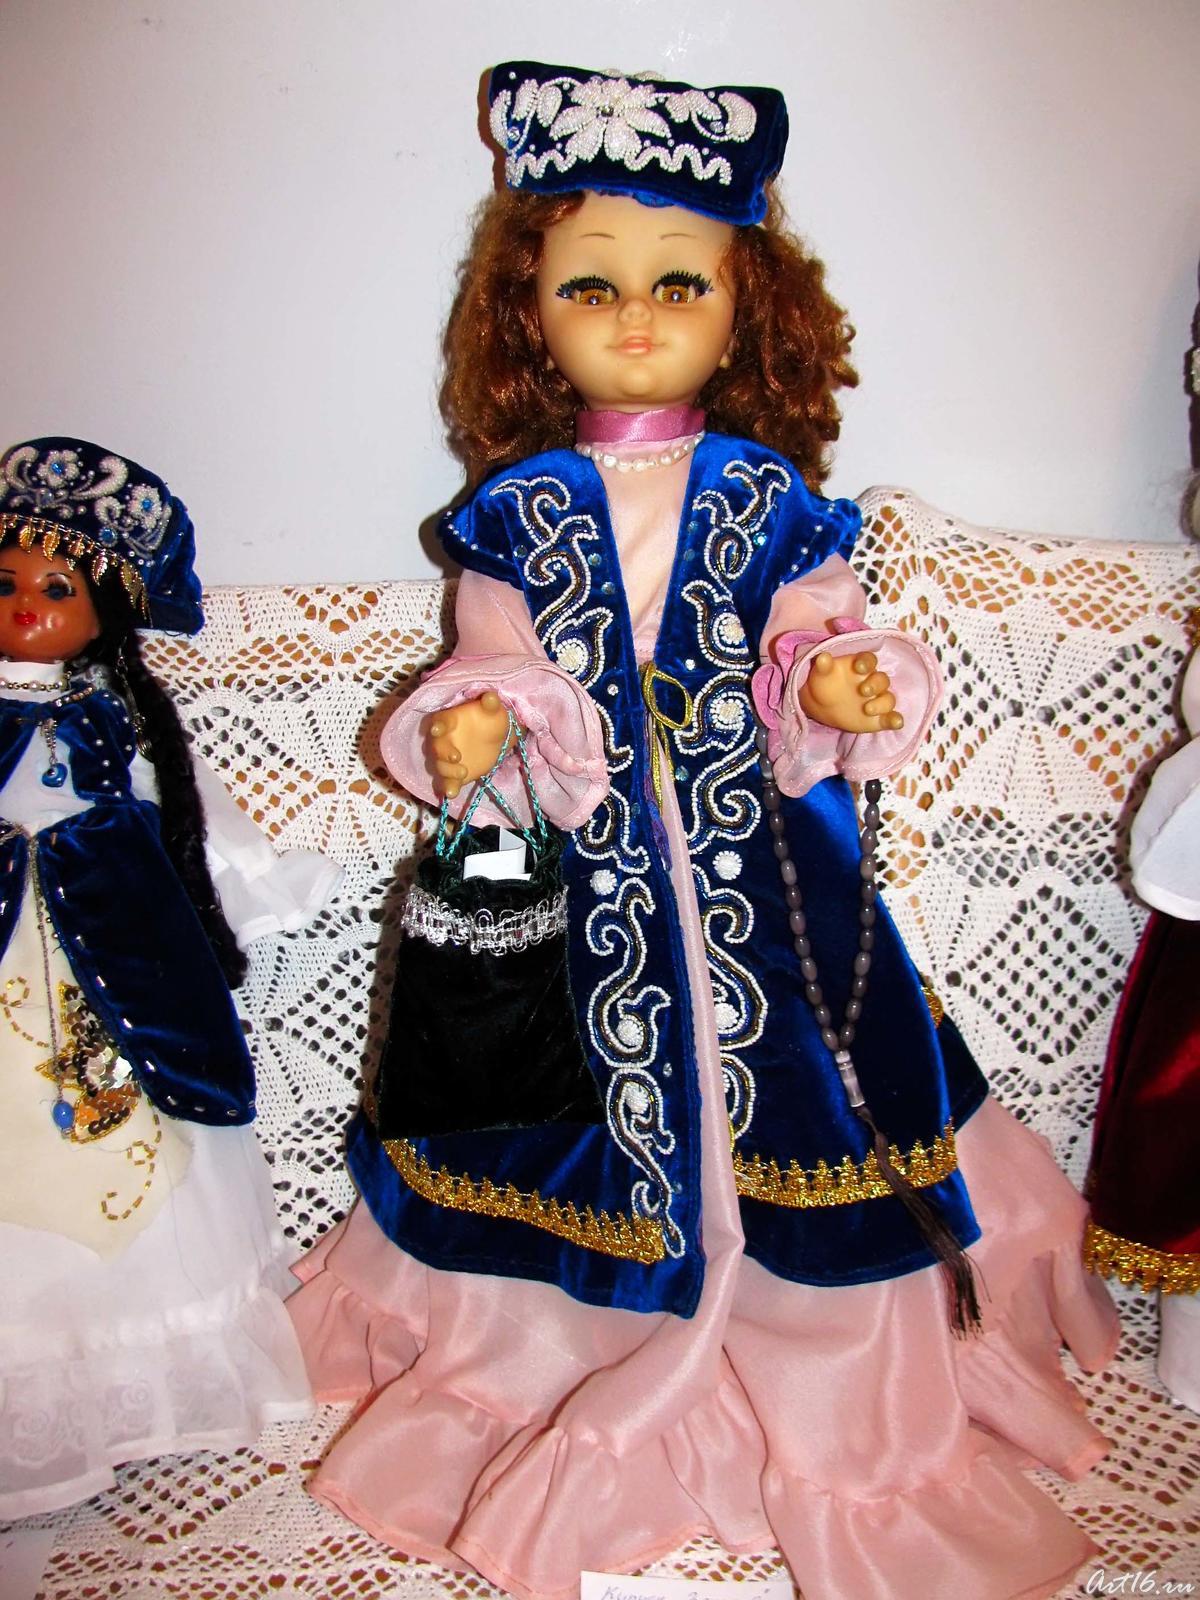 Фото №57613. Кукла "Зухра", 2005